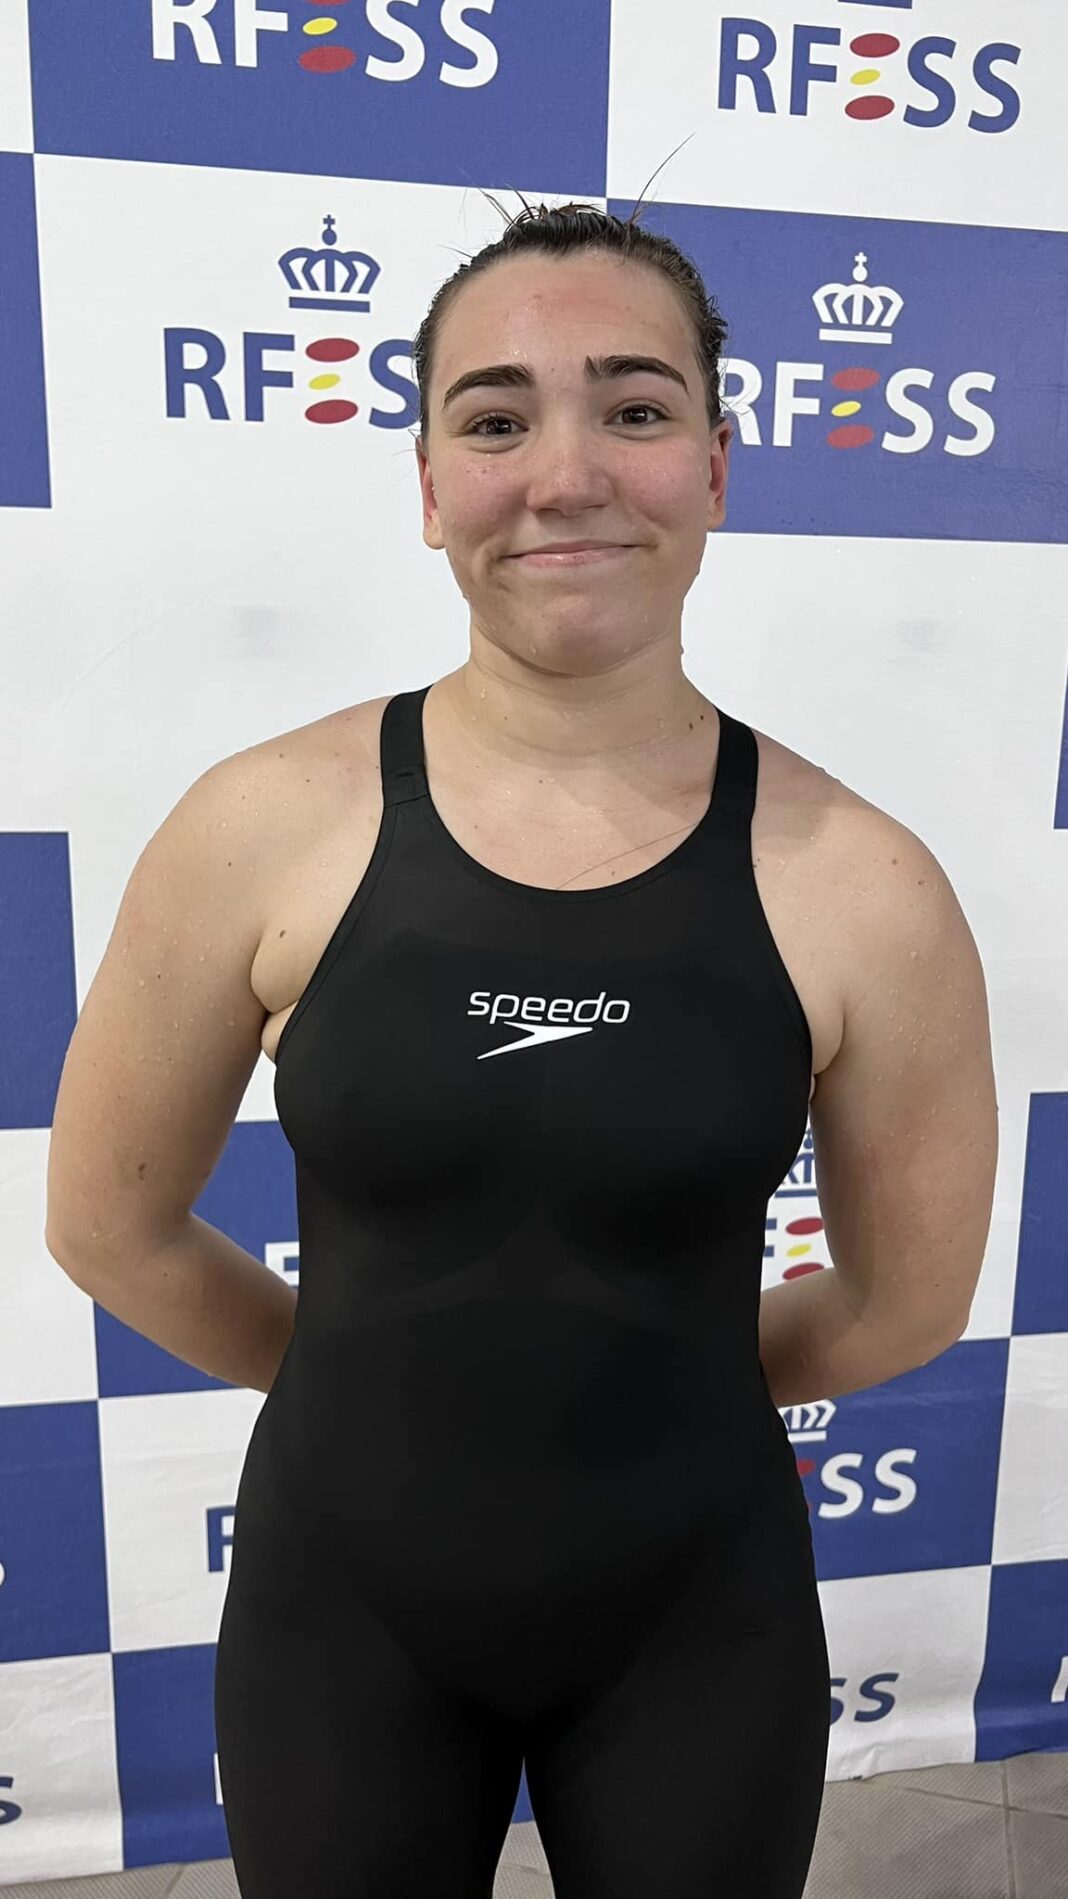 María Rodríguez Rodríguez de la Sierra (Club A.C.N. Marisma) – Récord de España 100 m. socorrista en categoría absoluta femenina (00:57:16 frente a 00:57:97).